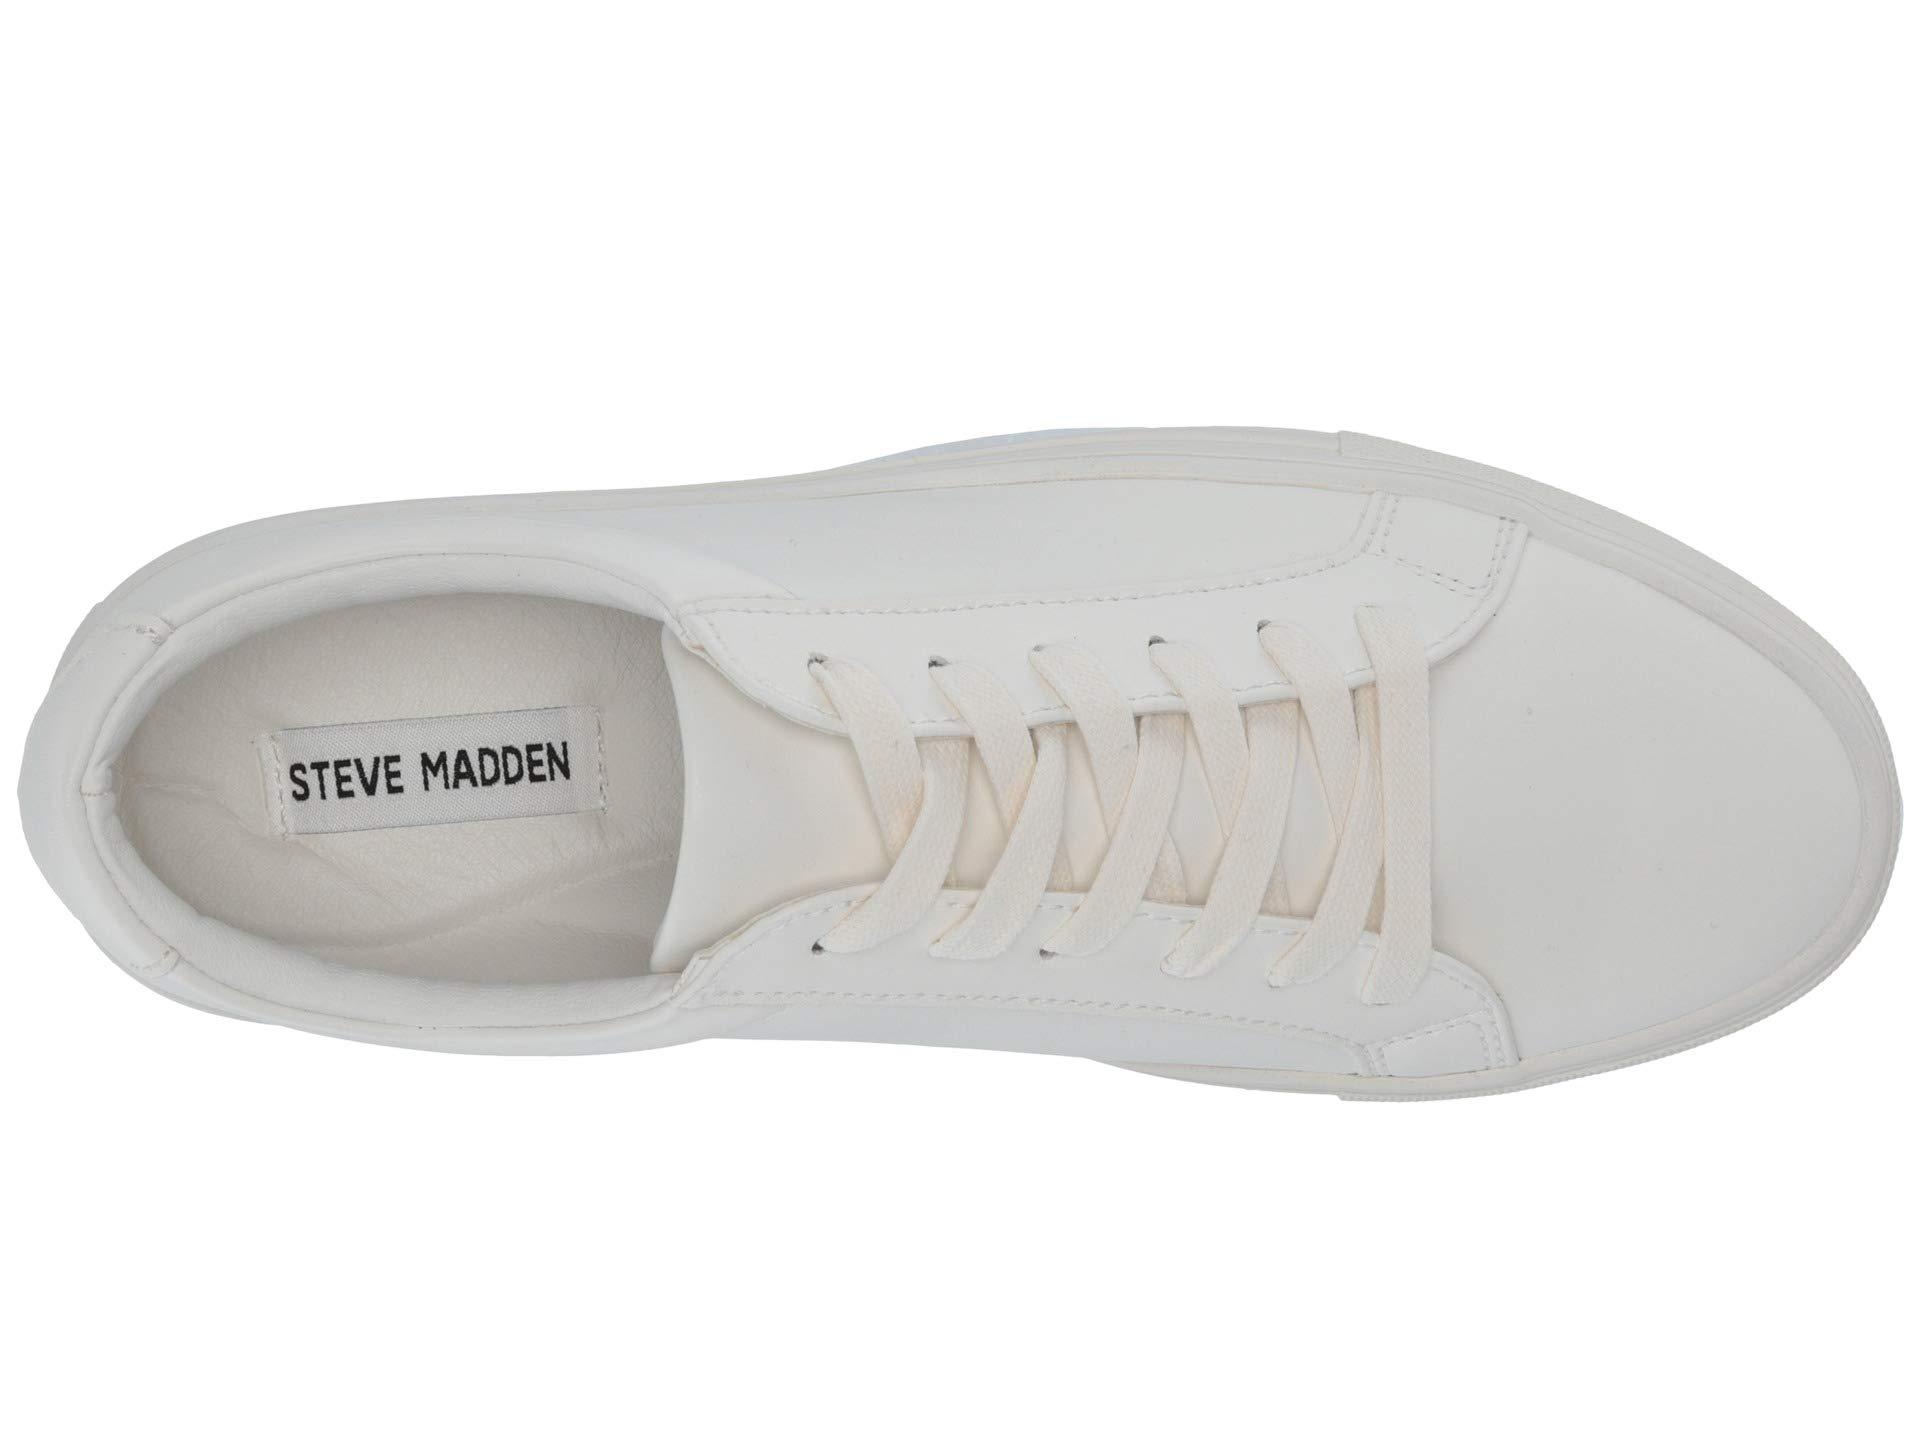 Steve Madden Coastal Sneaker in White for Men - Lyst